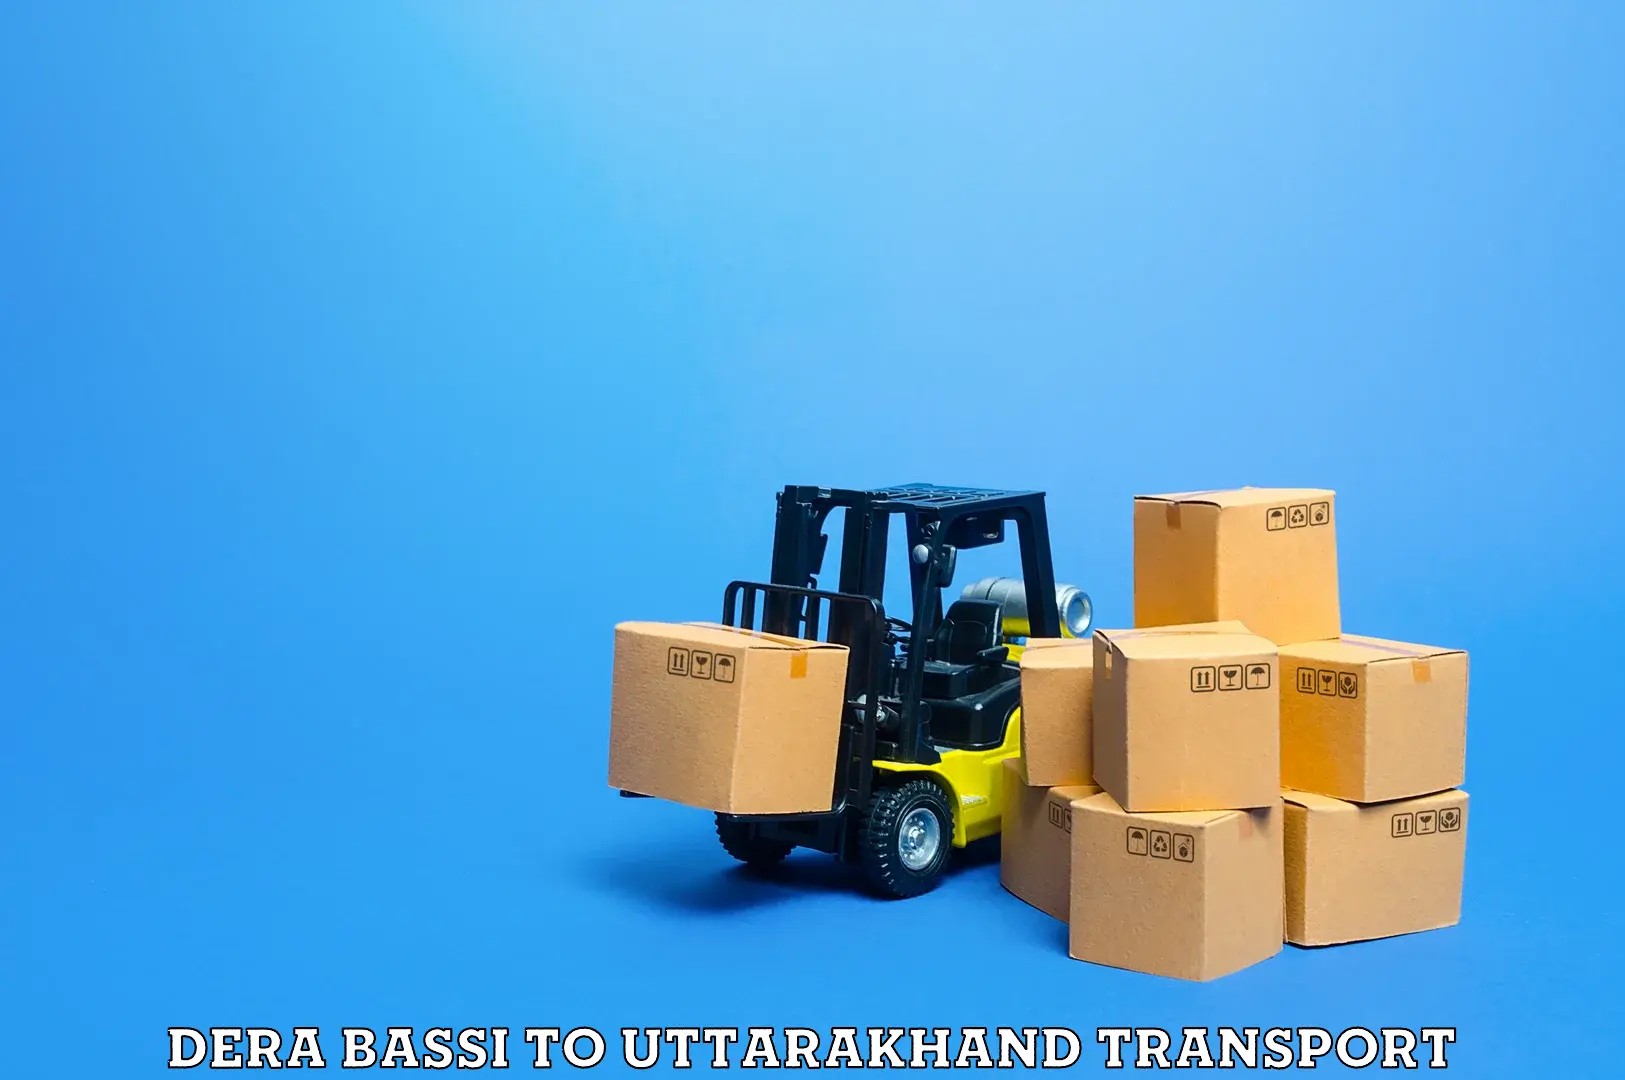 Cargo train transport services Dera Bassi to Uttarakhand